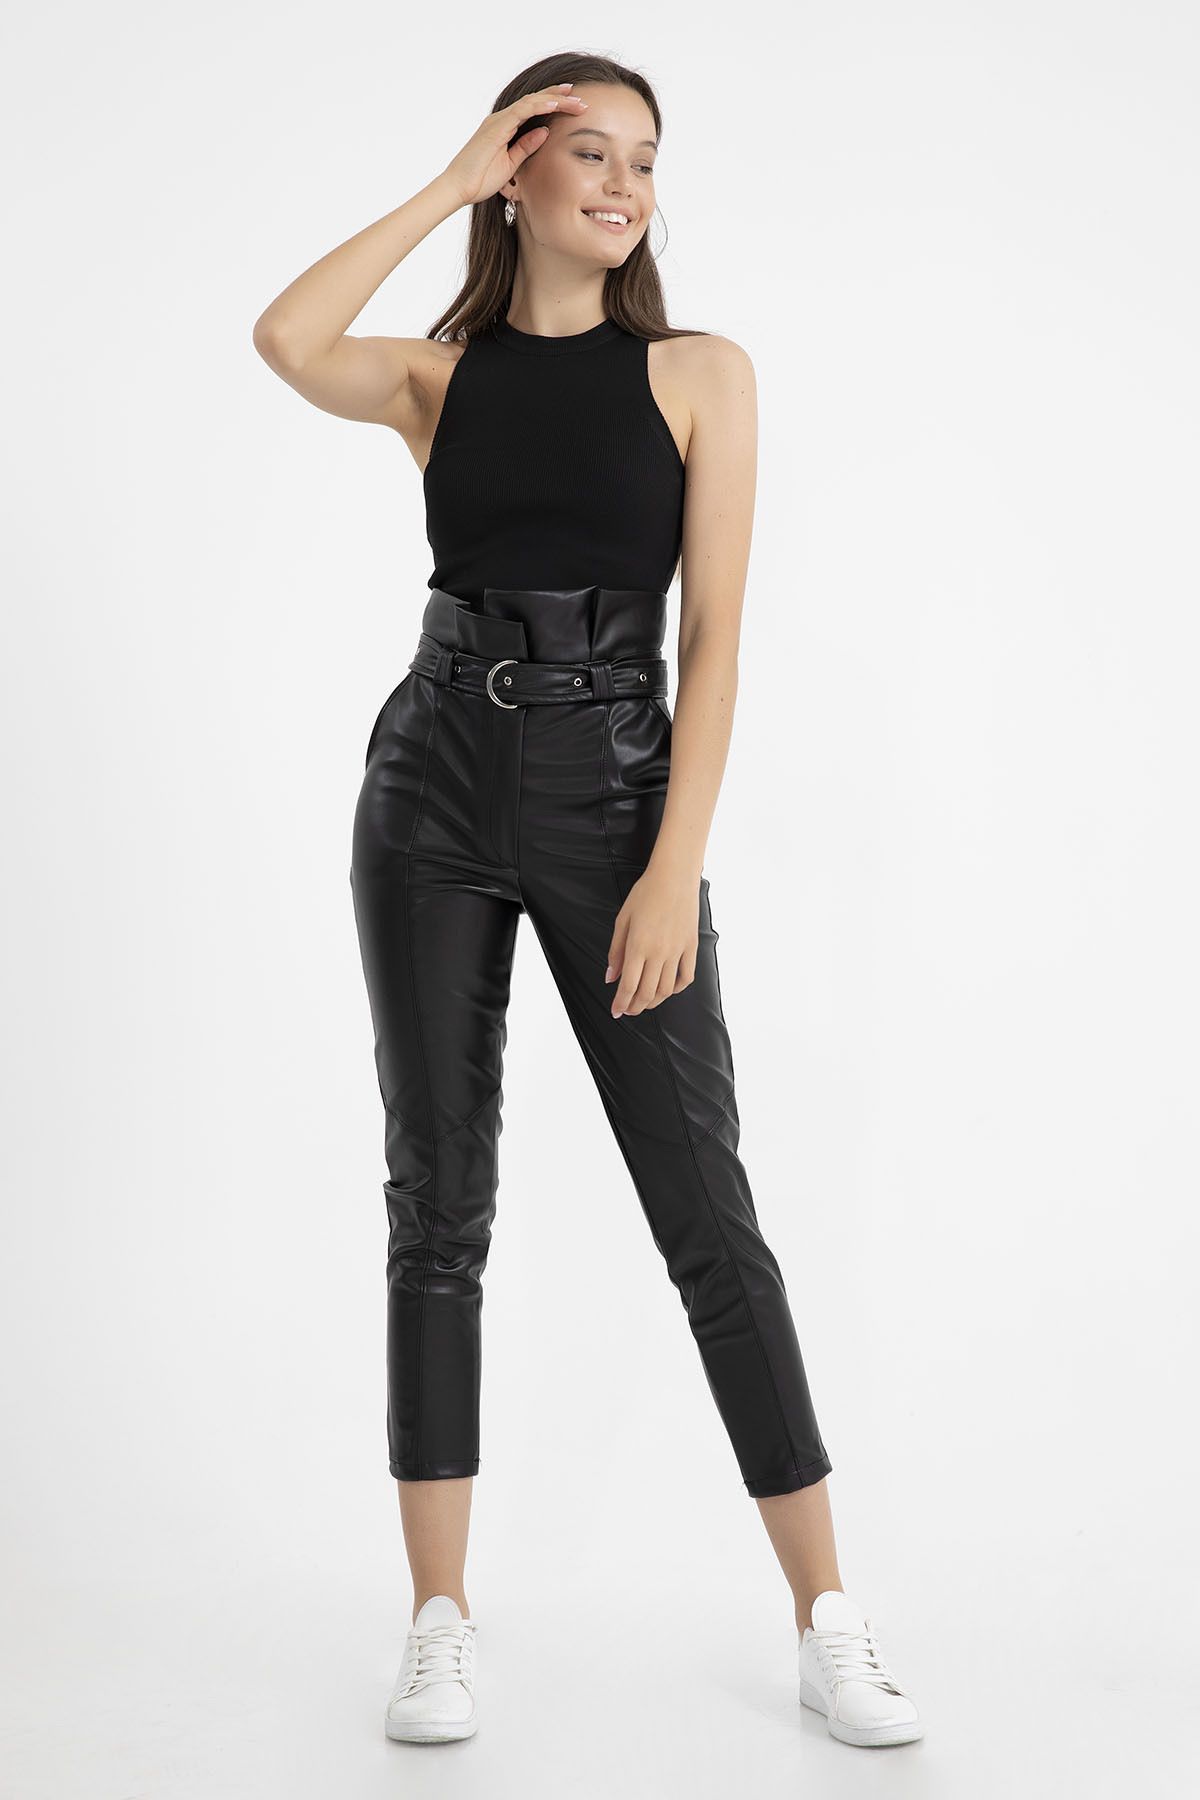 KaSheHa Siyah Yüksek Bel Kemerli Içi Şardonlu Havuç Model Deri Pantolon 90 Cm